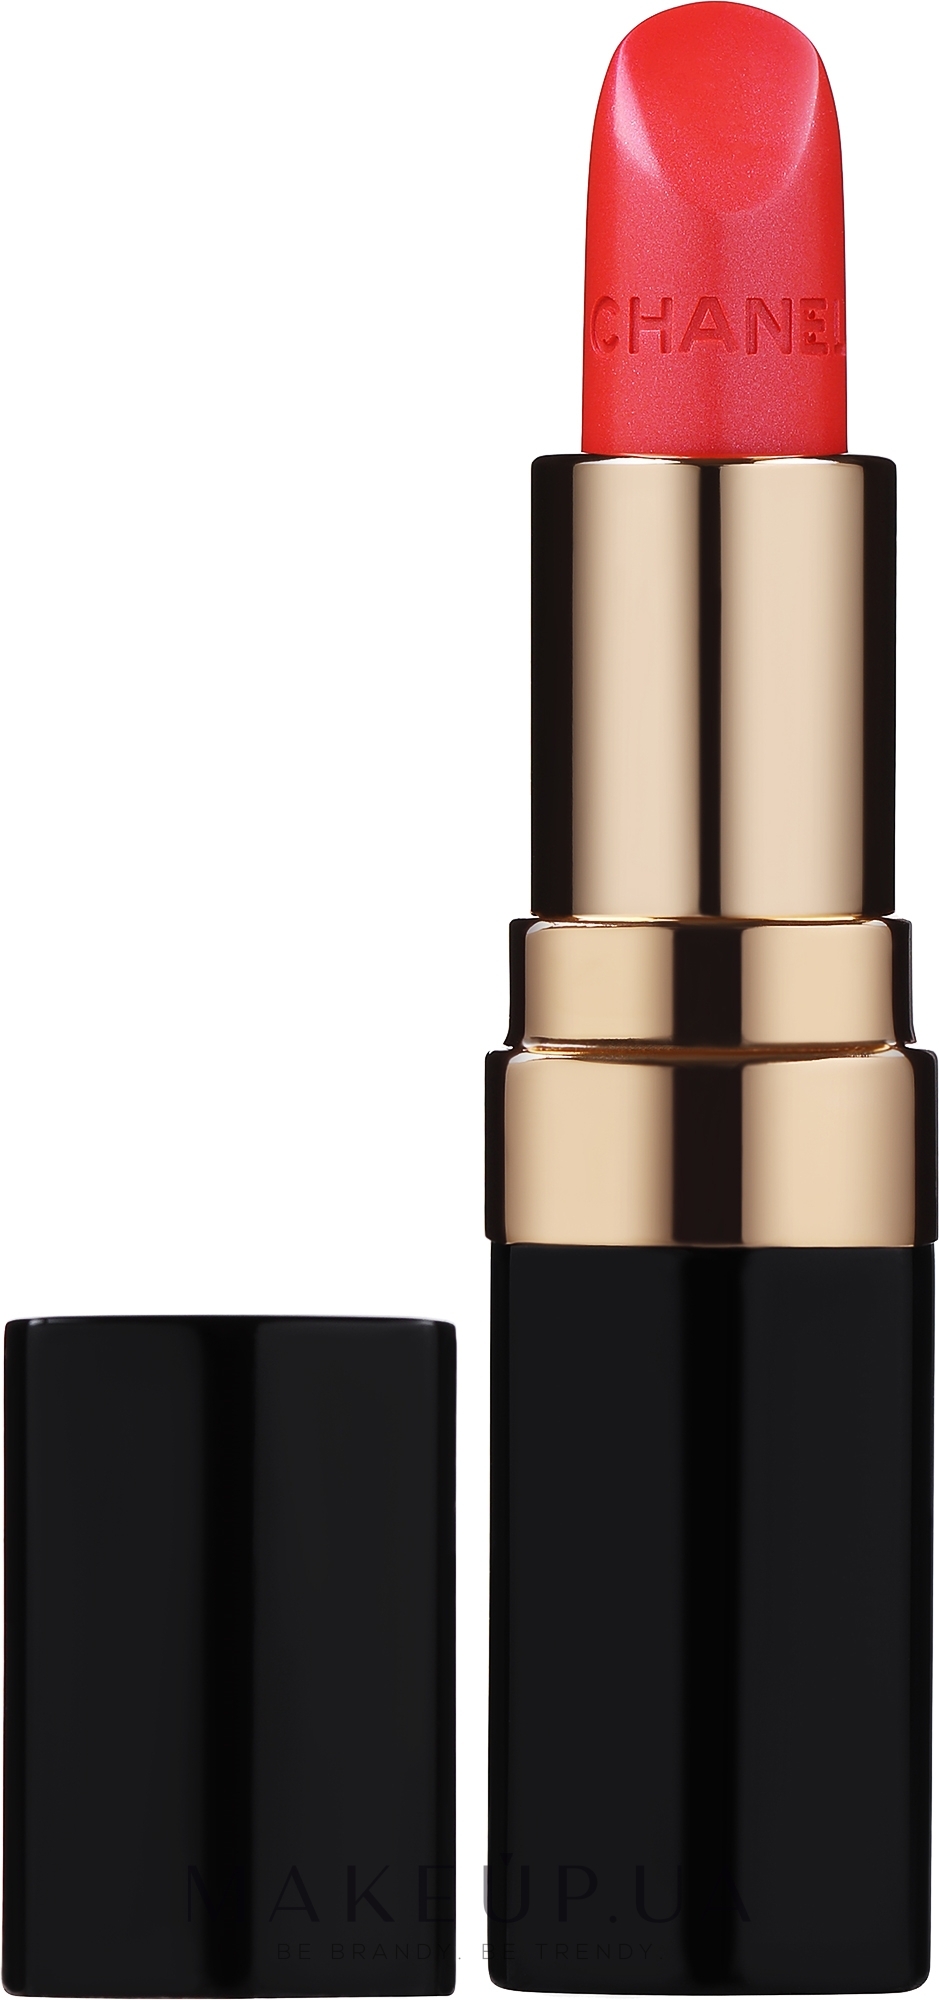 Jual Chanel Lipstick Rouge Coco Original Lip Colour N°446 Etienne